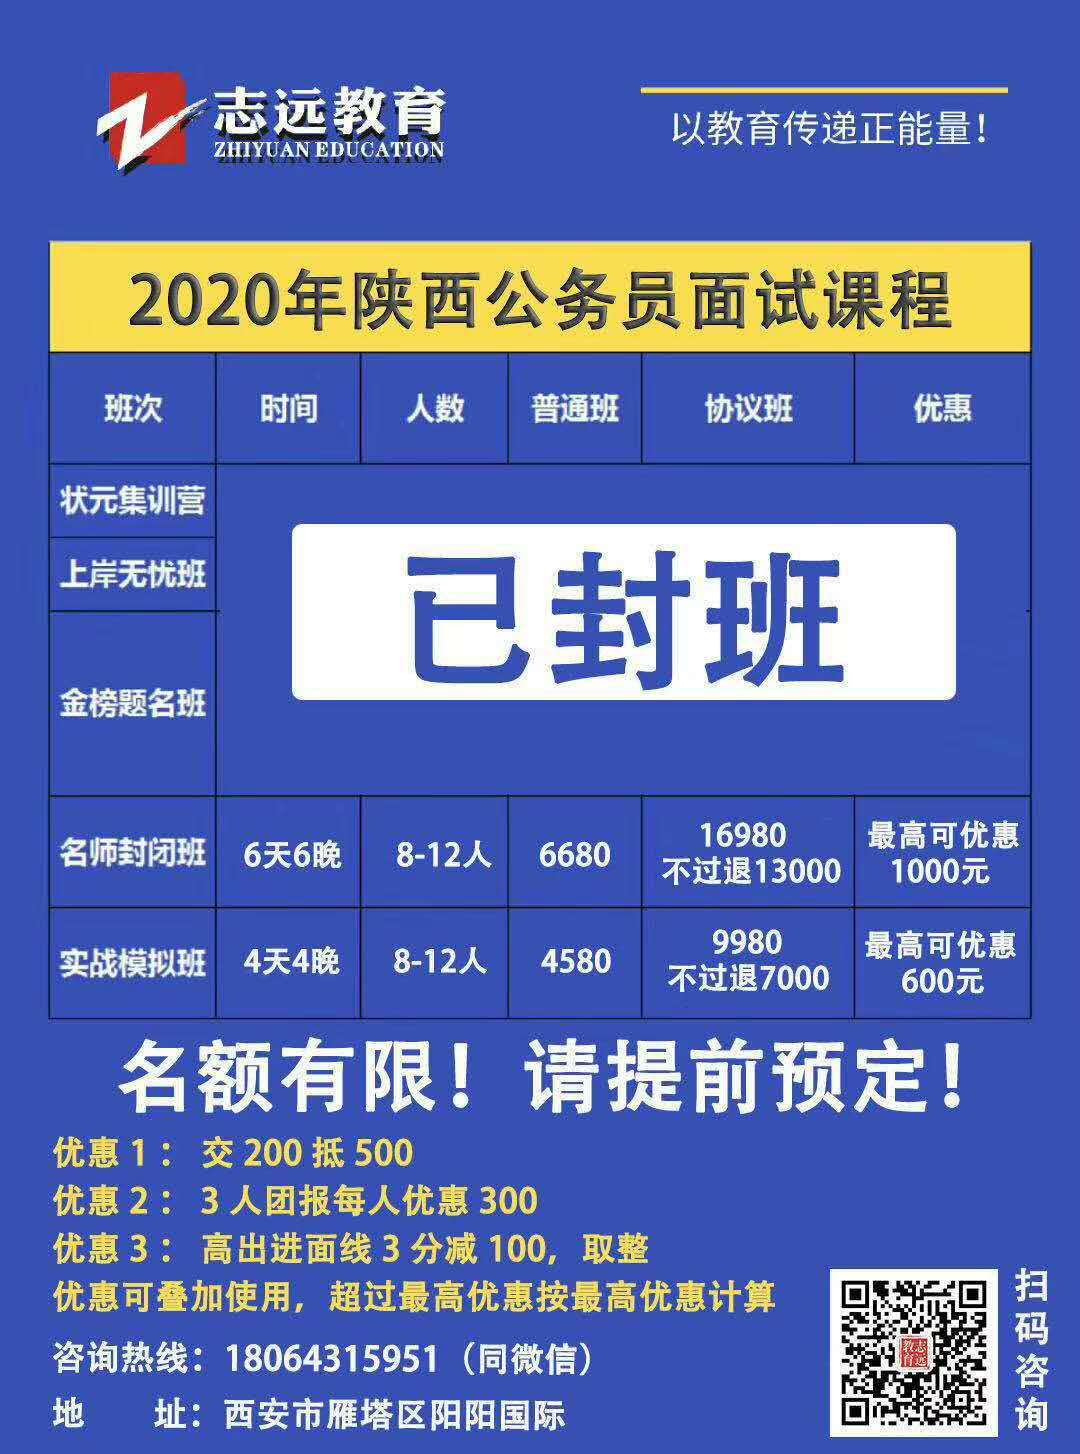 陕西省司法监狱戒毒系统2020年统一考试录用公务员面试公告(图1)